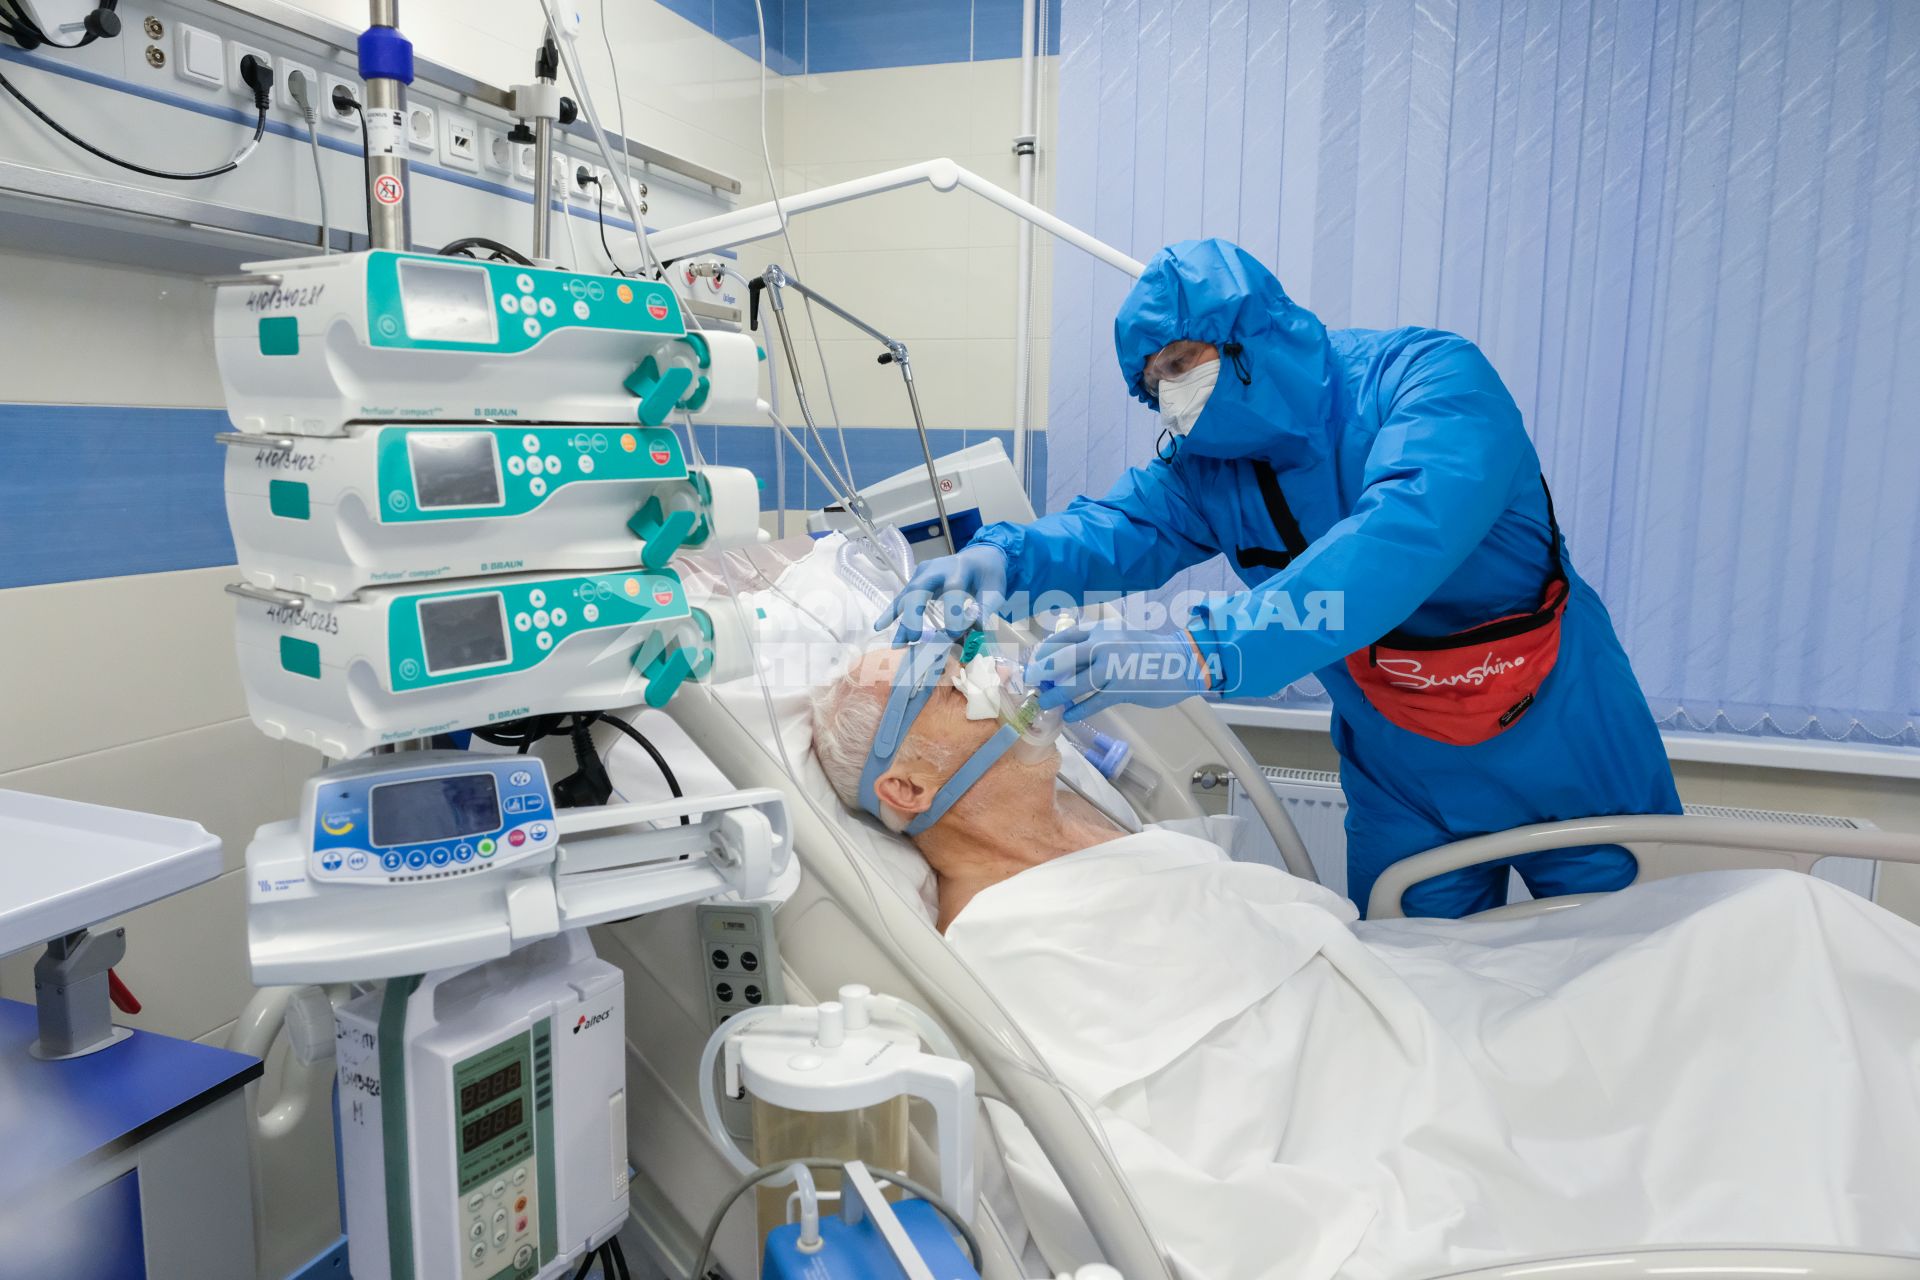 Санкт-Петербург. Медицинский работник и пациент в Александровской  больнице, где оказывают помощь пациентам с коронавирусной инфекцией COVID-19.